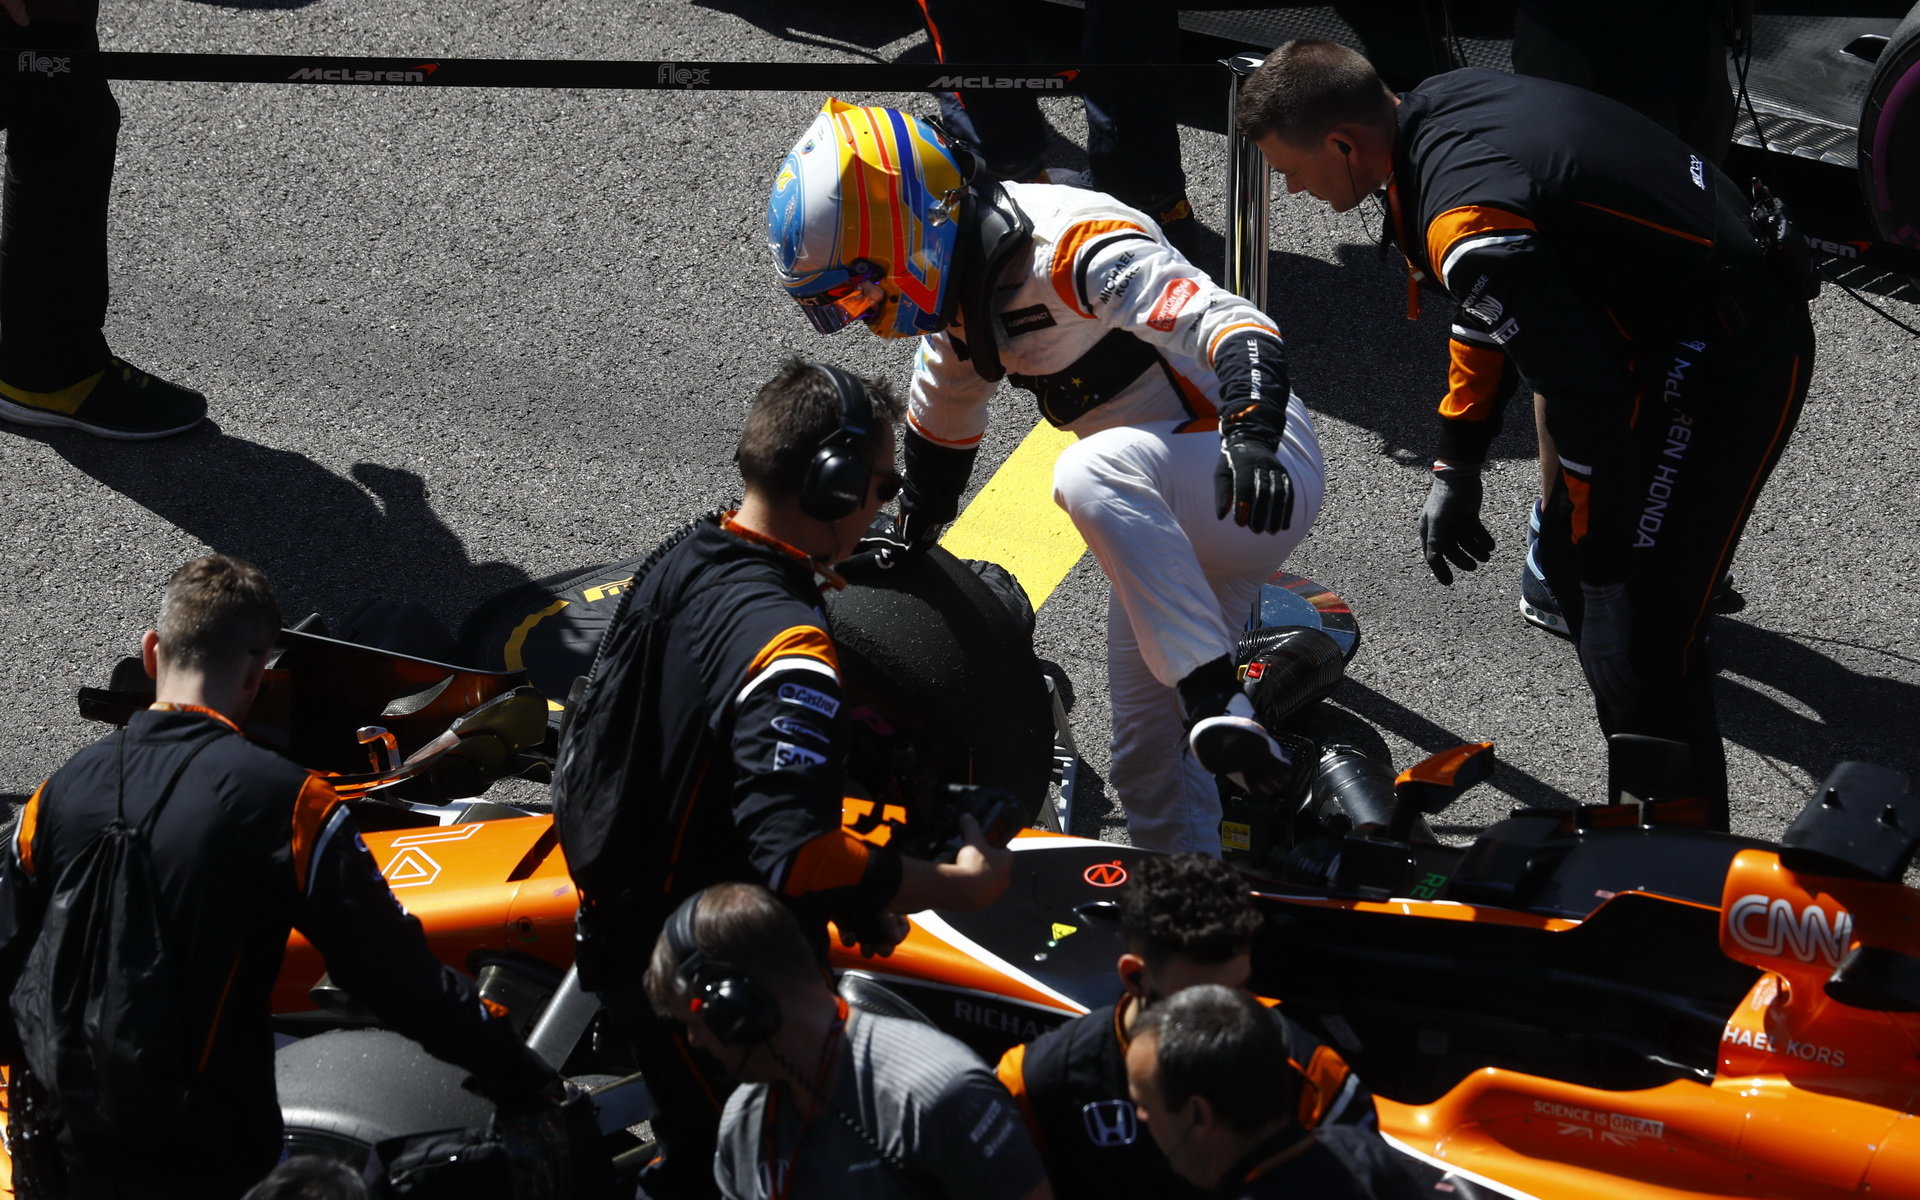 Fernando Alonso nastupuje před začátkem závodu do vozu